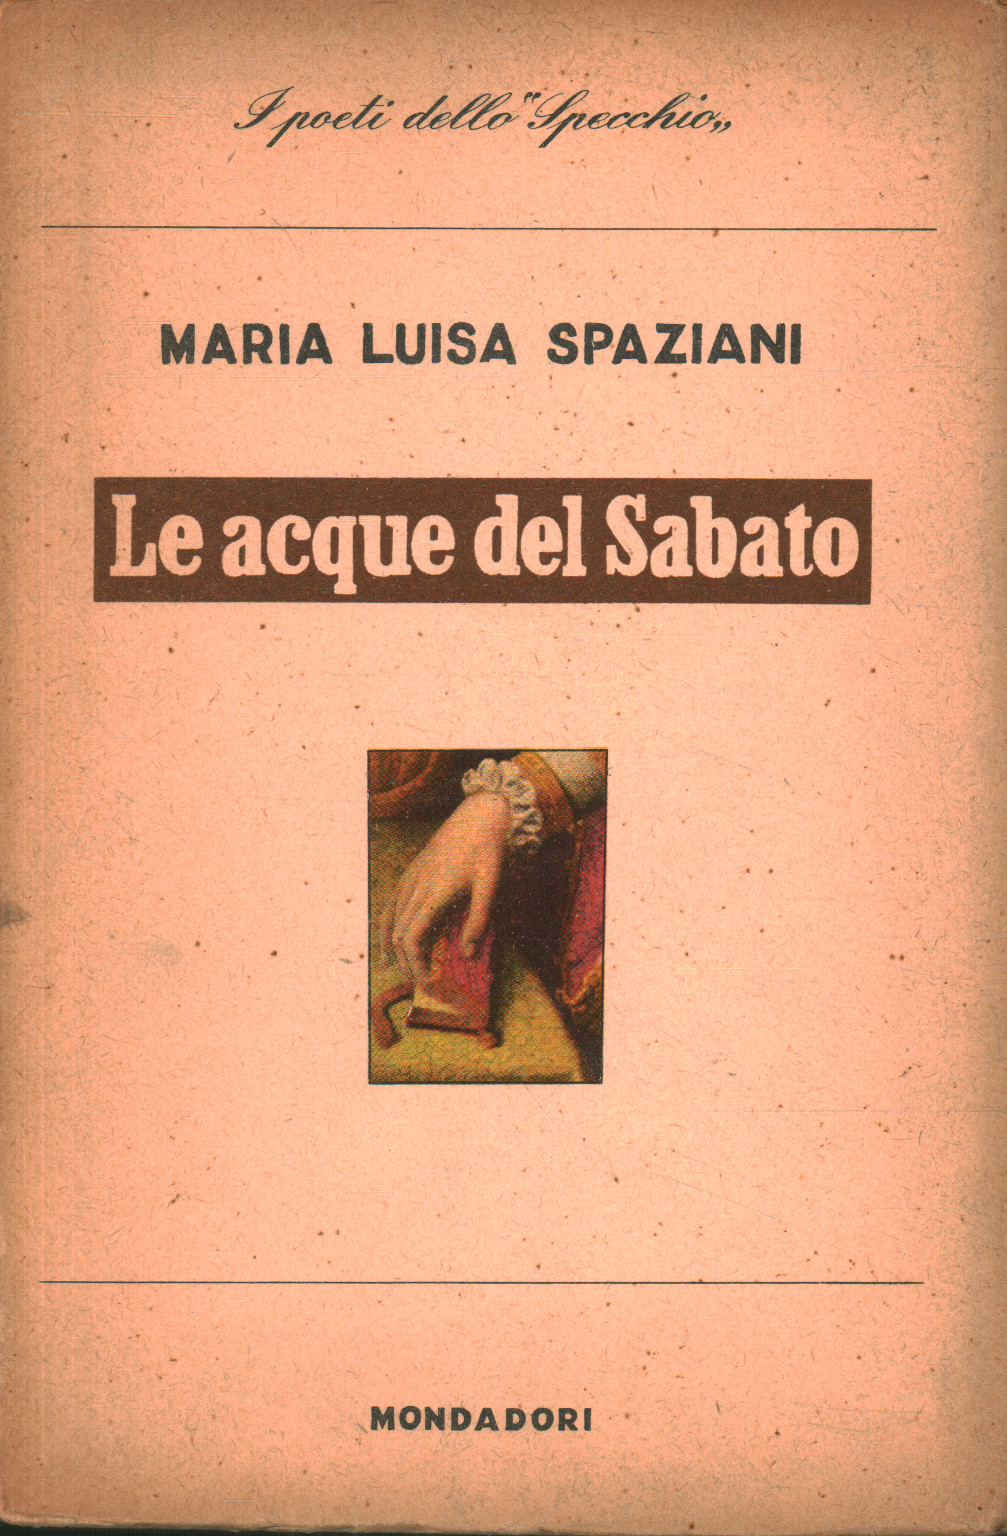 Las aguas del sábado, Maria Luisa Spaziani